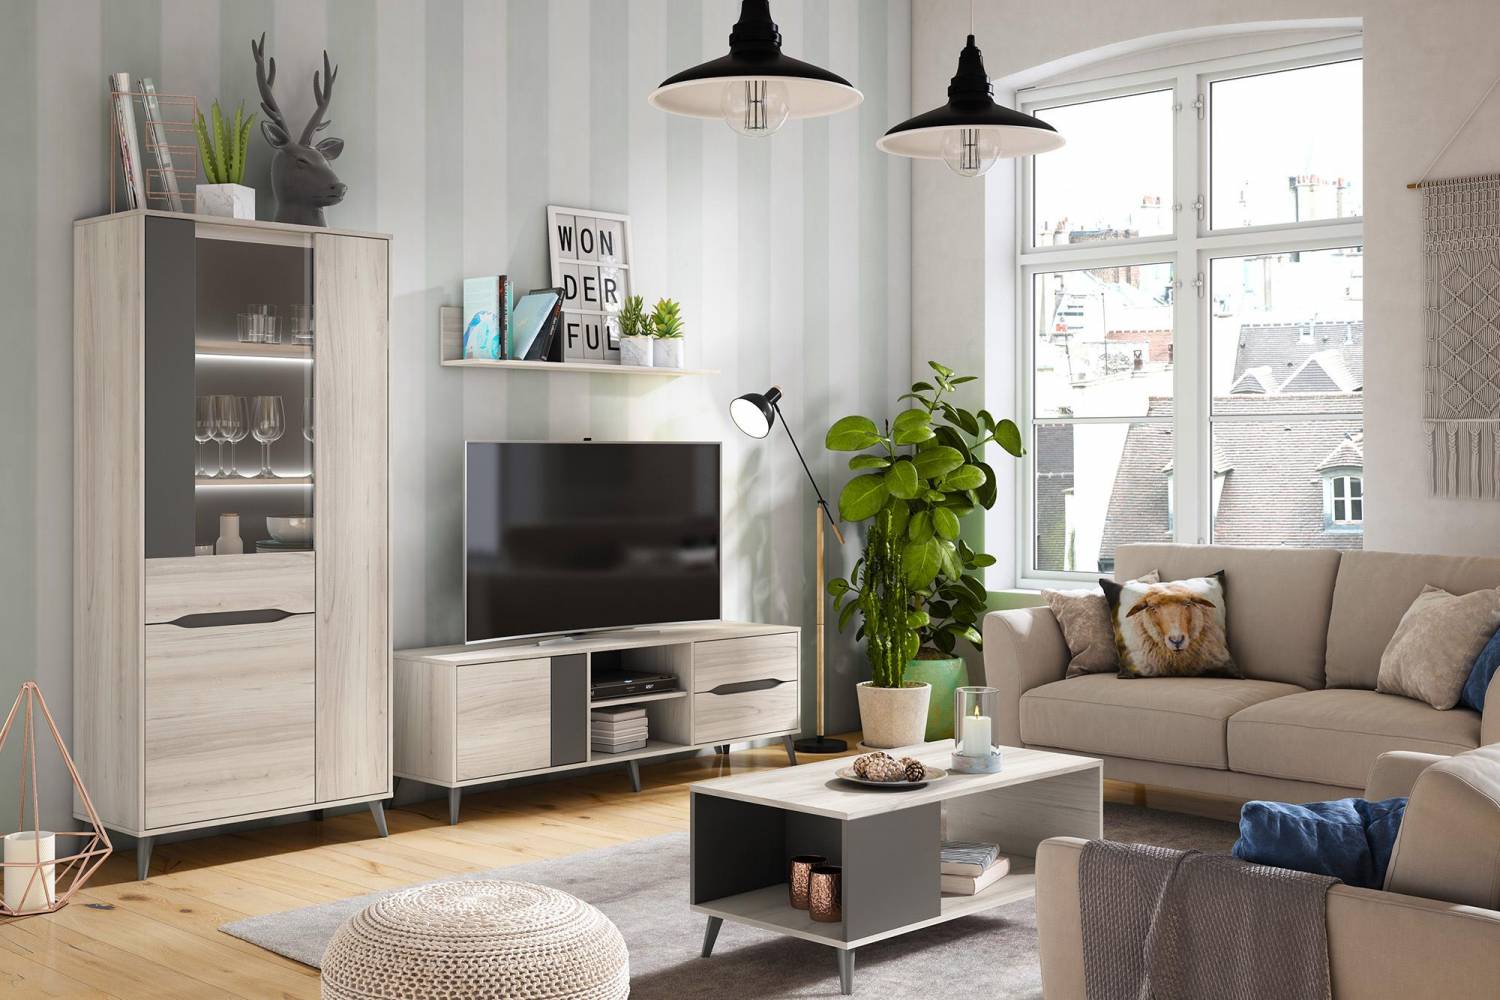 Dale un nuevo aire a tu hogar: renueva los muebles sin incurrir en un gasto excesivo 2